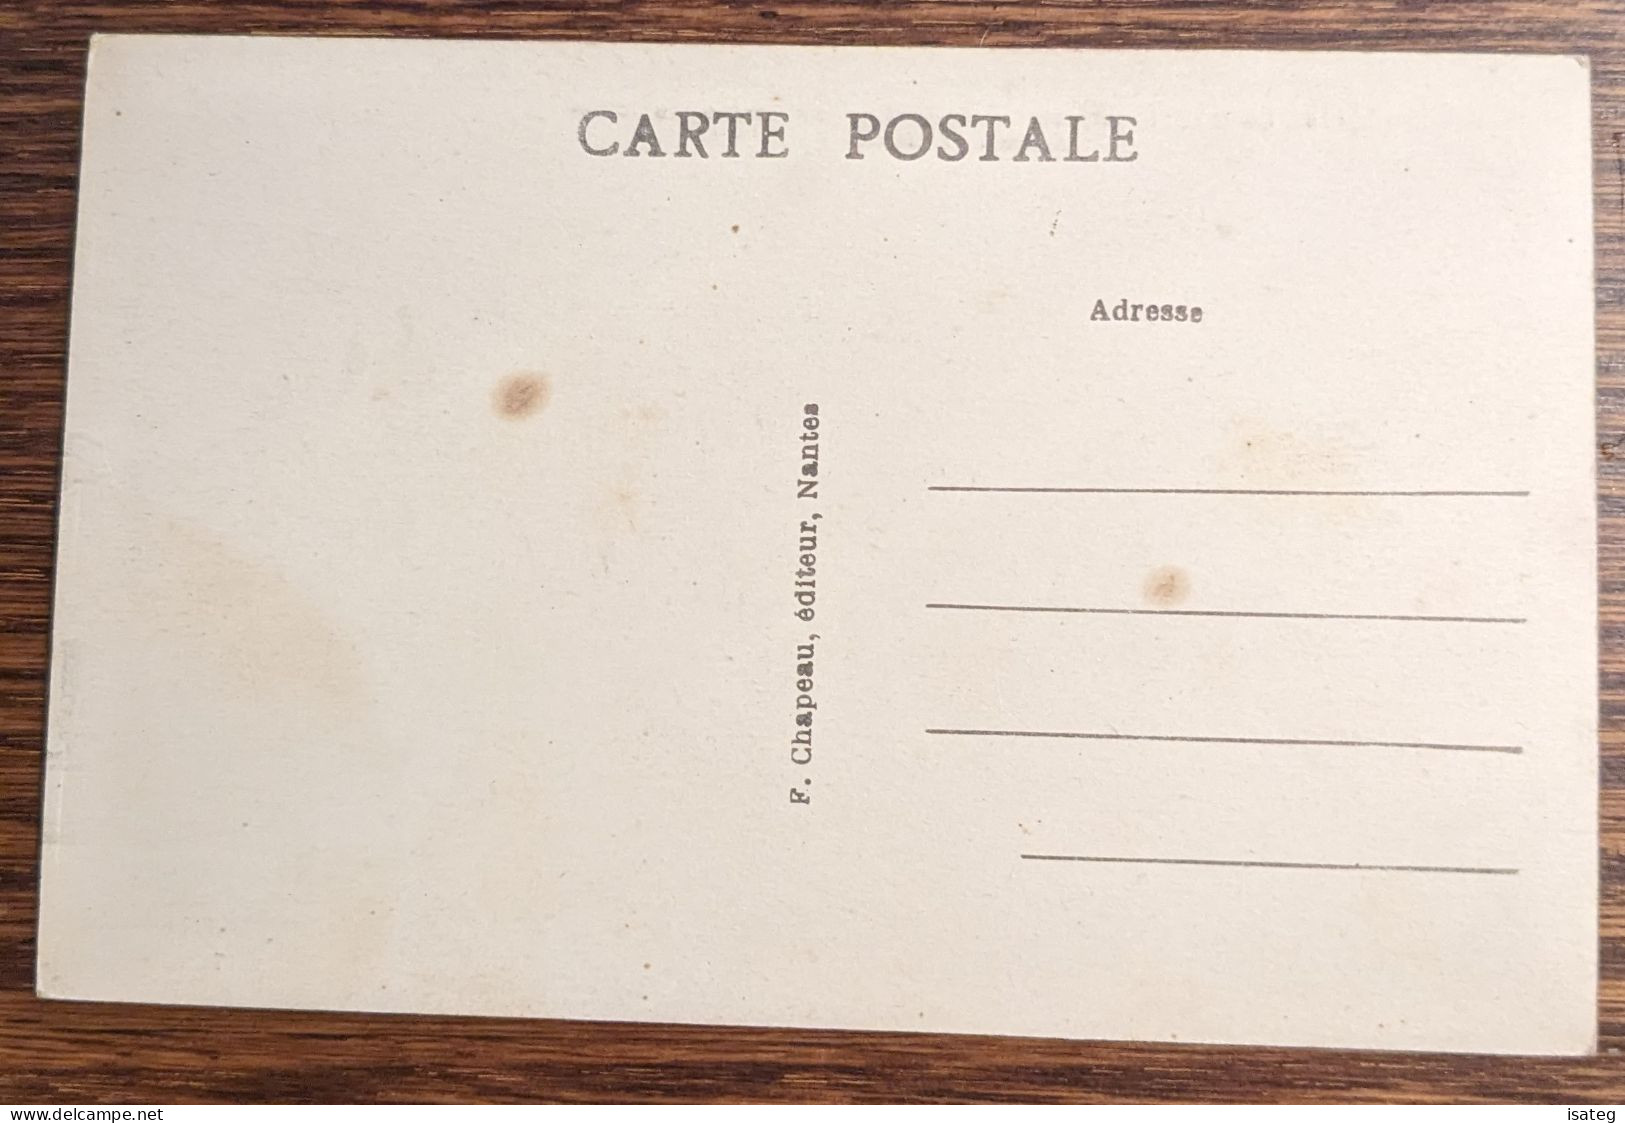 Carte Postale Ancienne Colorisée : La Baule Sur Mer - Le Casino Municipal - Non Classés